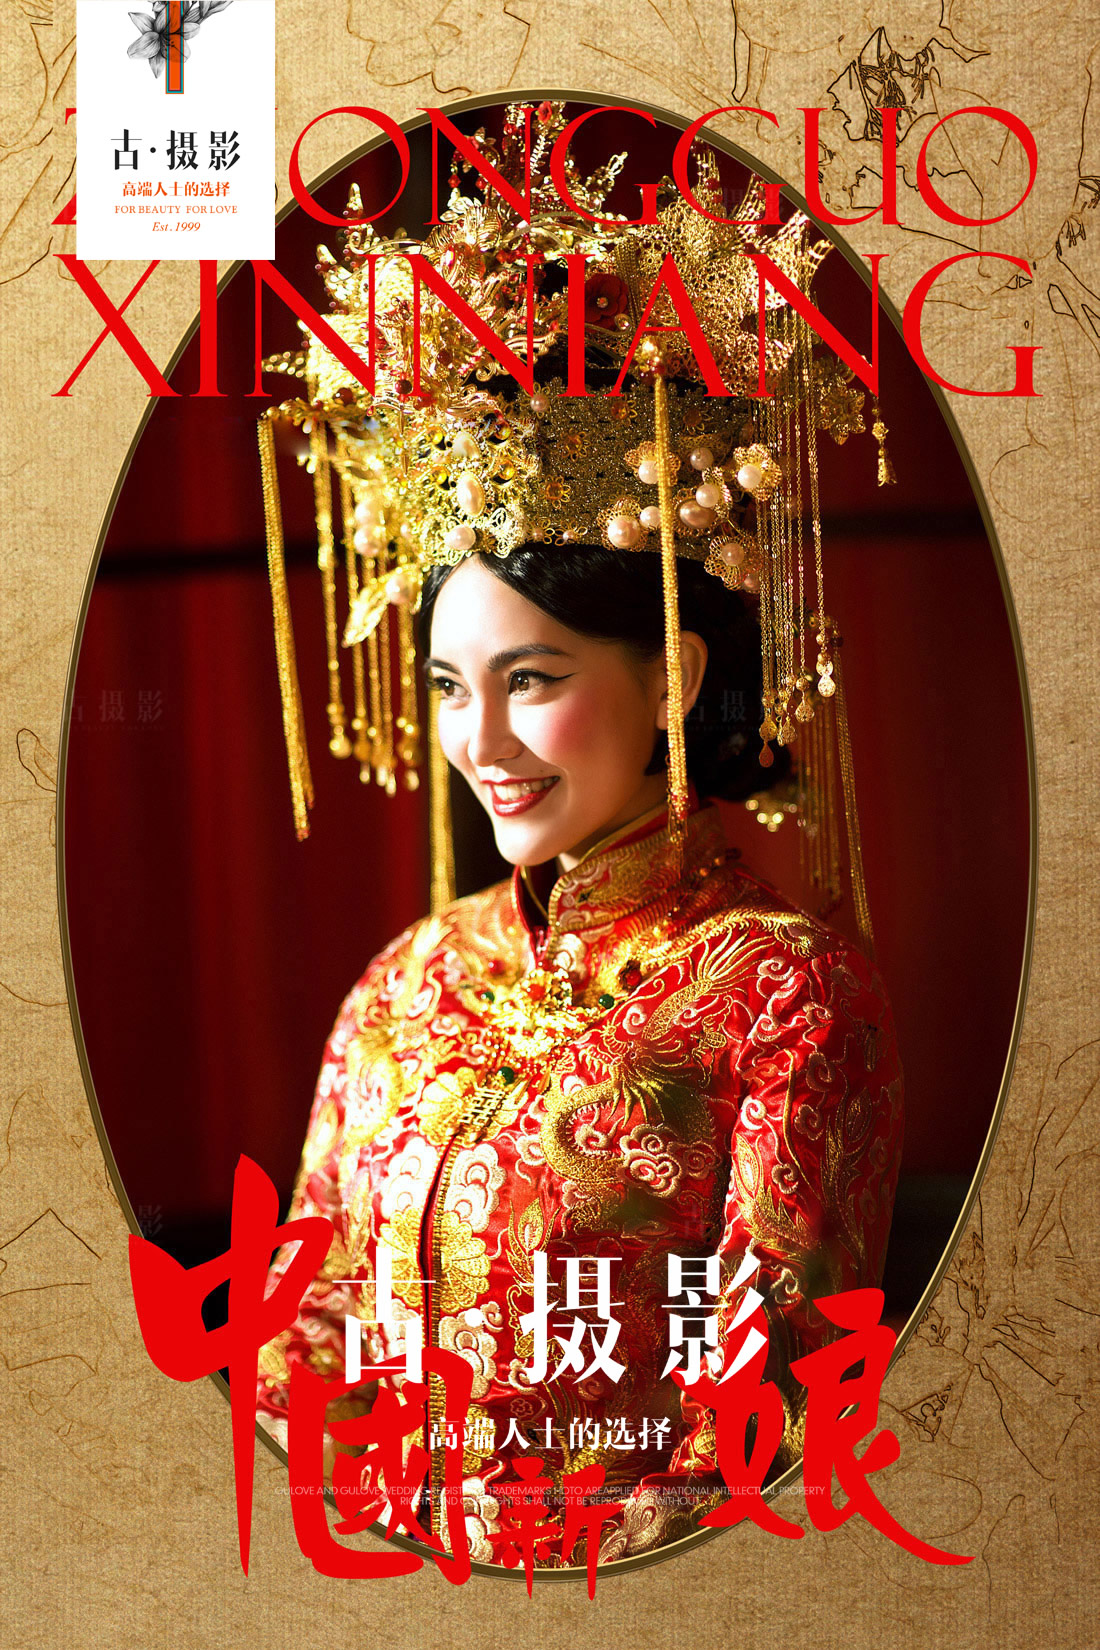 经典《中国新娘》系列 - 明星范 - 古摄影婚纱艺术-古摄影成都婚纱摄影艺术摄影网